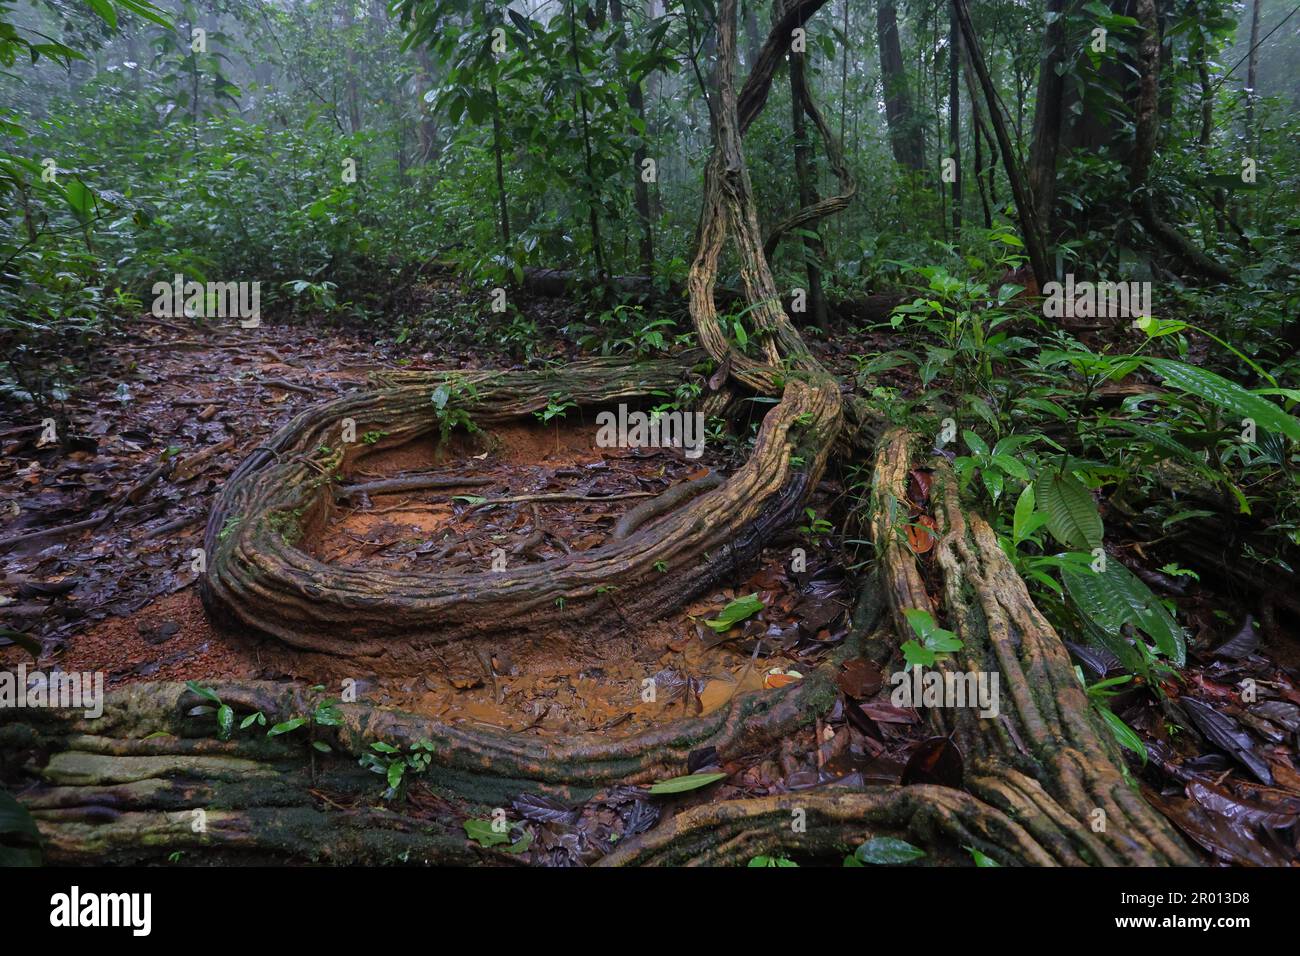 Interno della foresta pluviale amazzonica nella Guyana francese. Foresta pluviale primaria, Amazonia. La giungla del Brasile, gli alberi nella foresta pluviale. Foto Stock